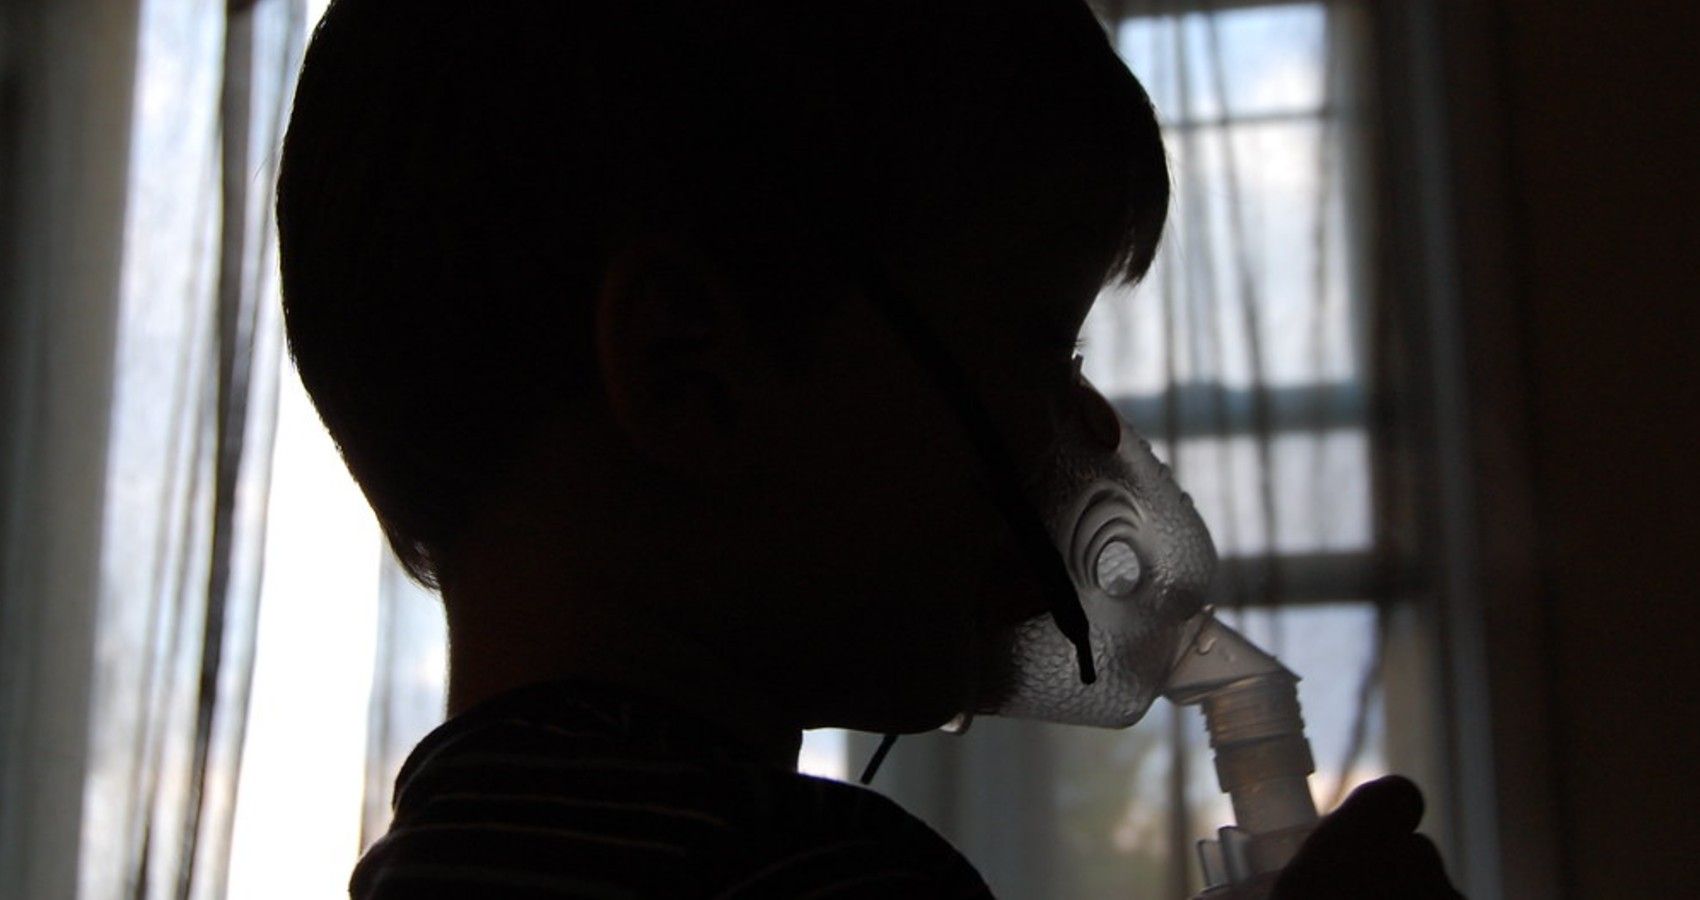 A Child Using An Asthma Inhaler